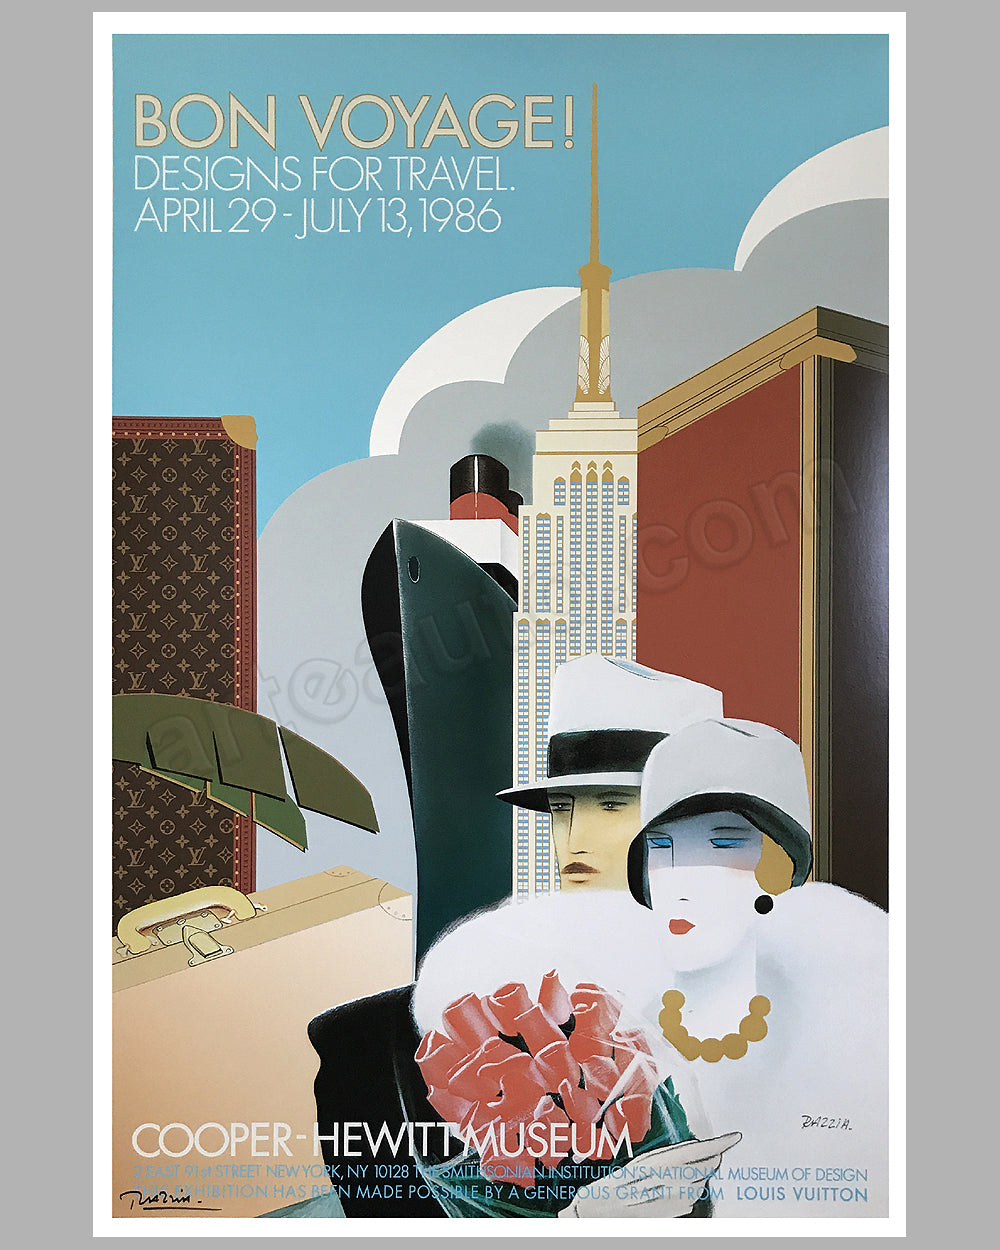 Louis Vuitton Classic Concours d’Elegance St Cloud 2003 poster by Razzia